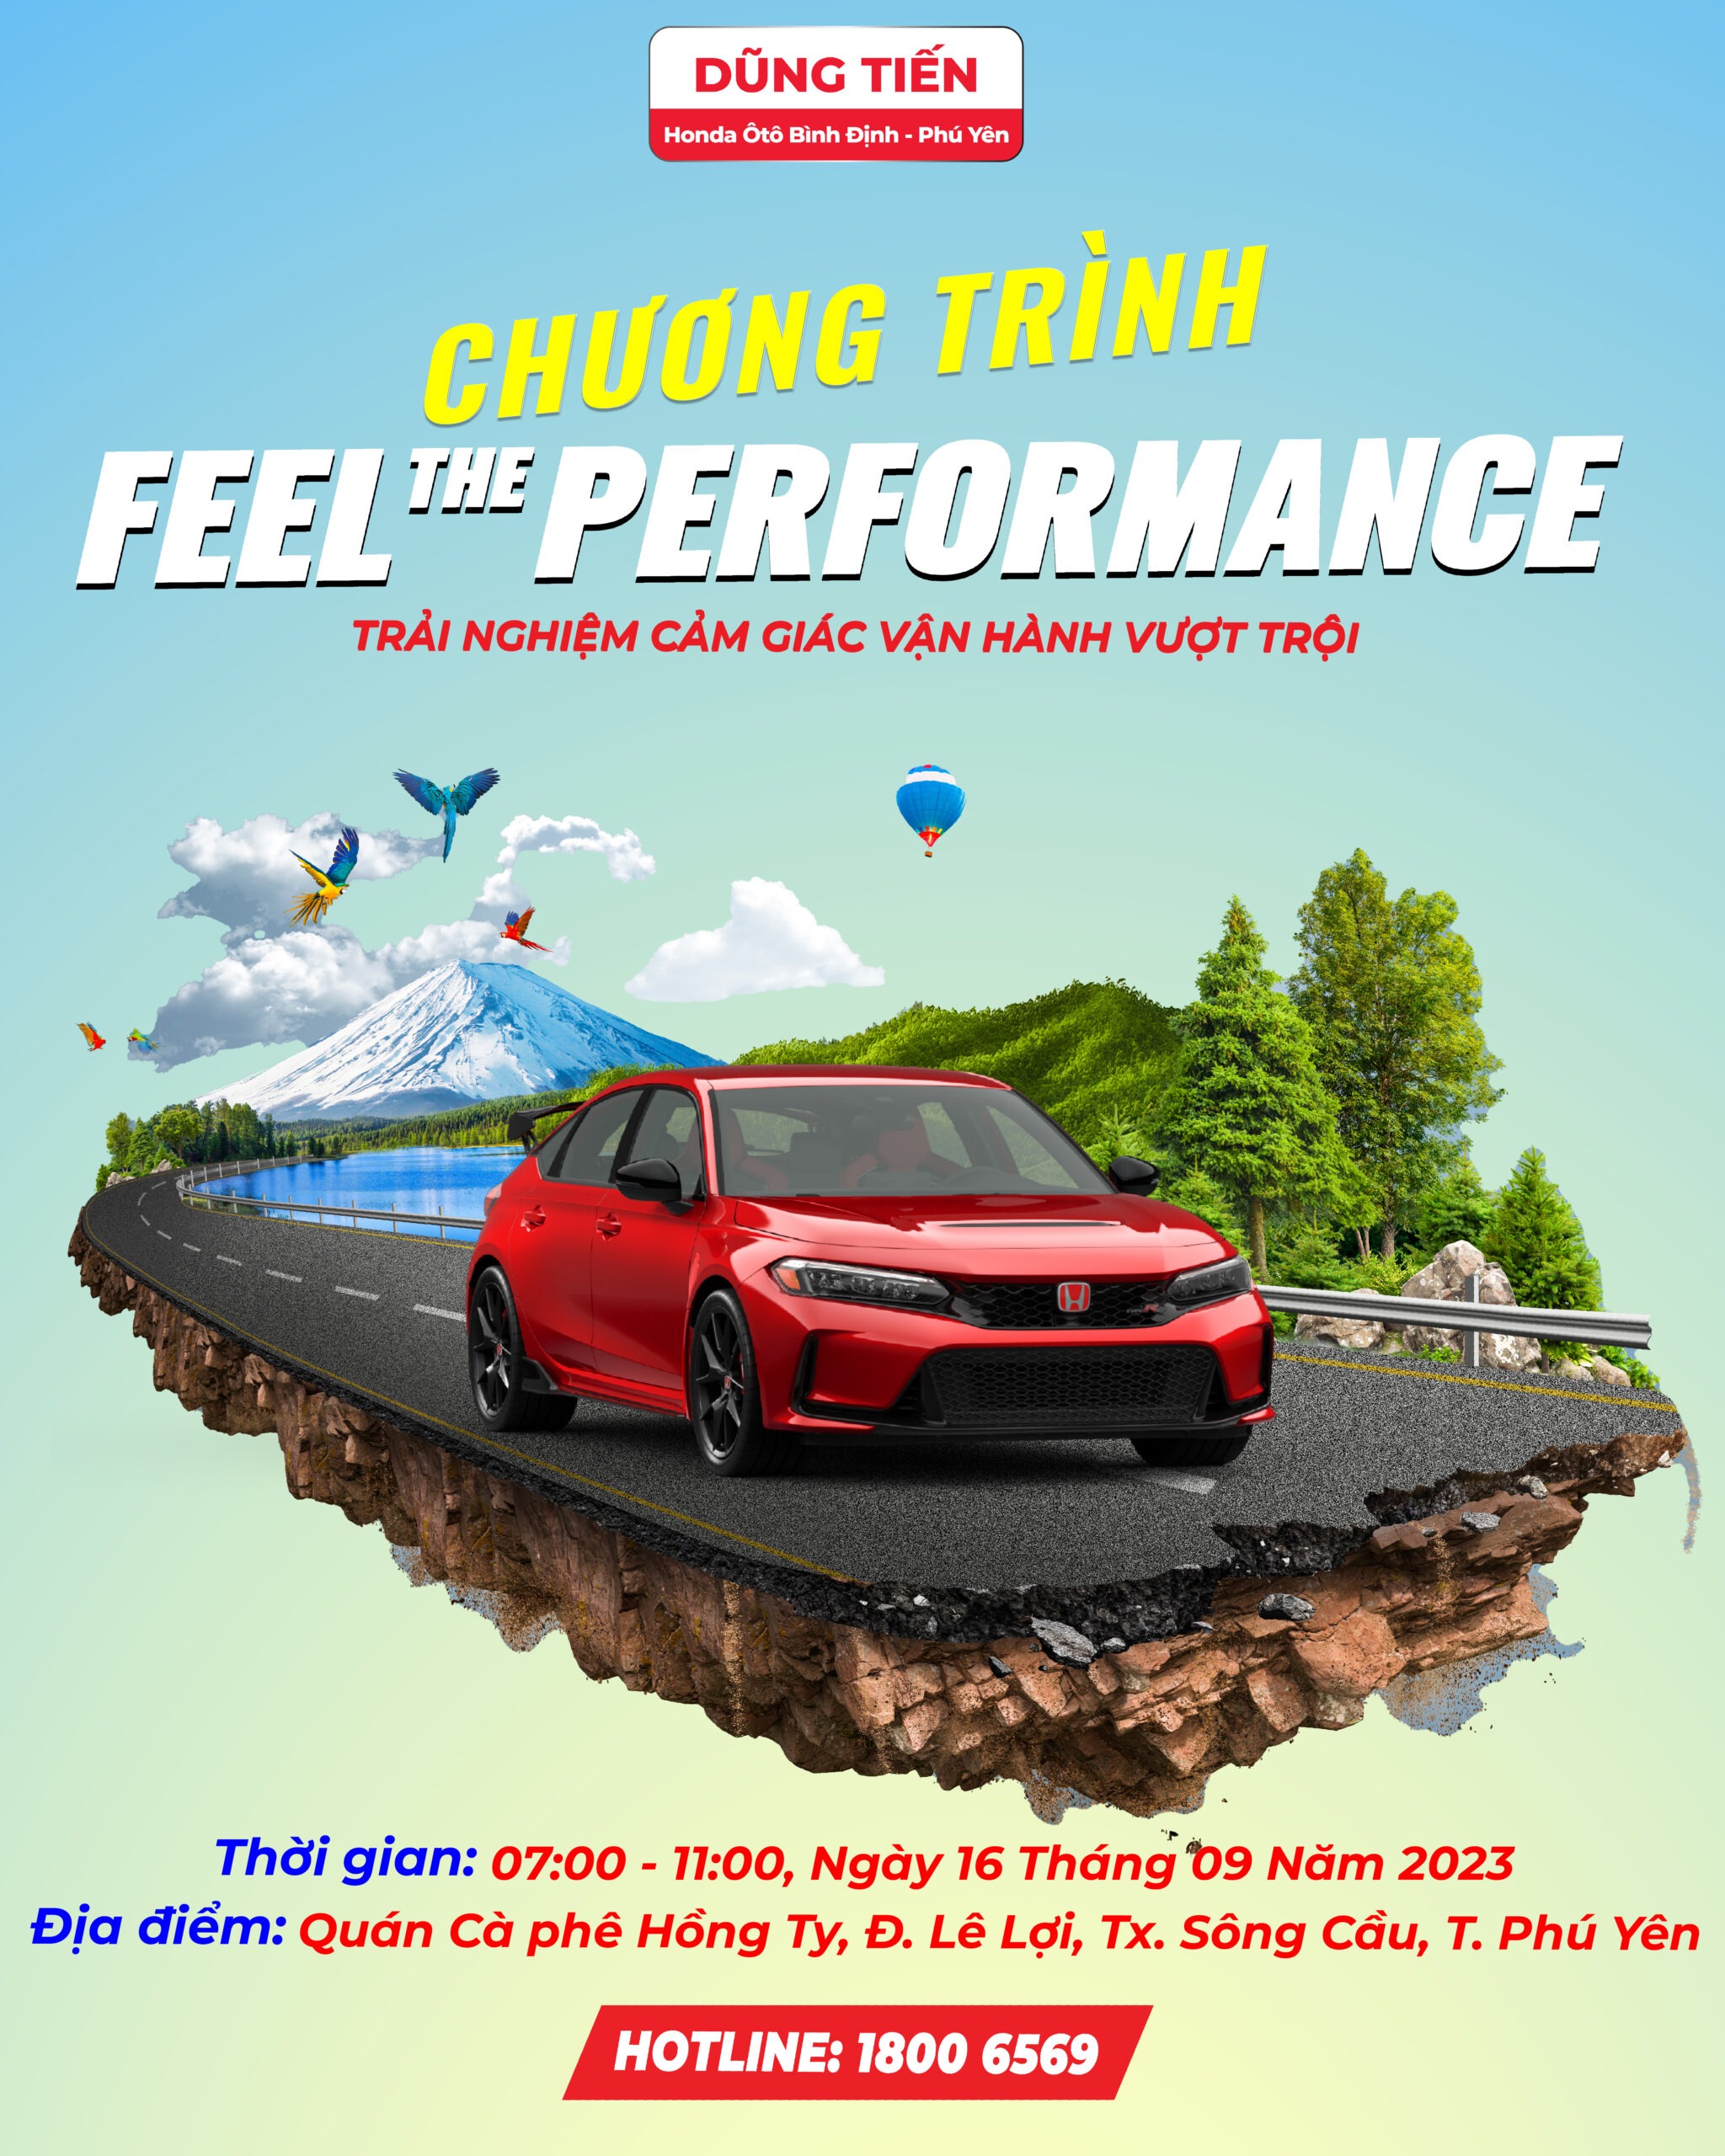 Chương trình lái thử ô tô Feel the performance tháng 09